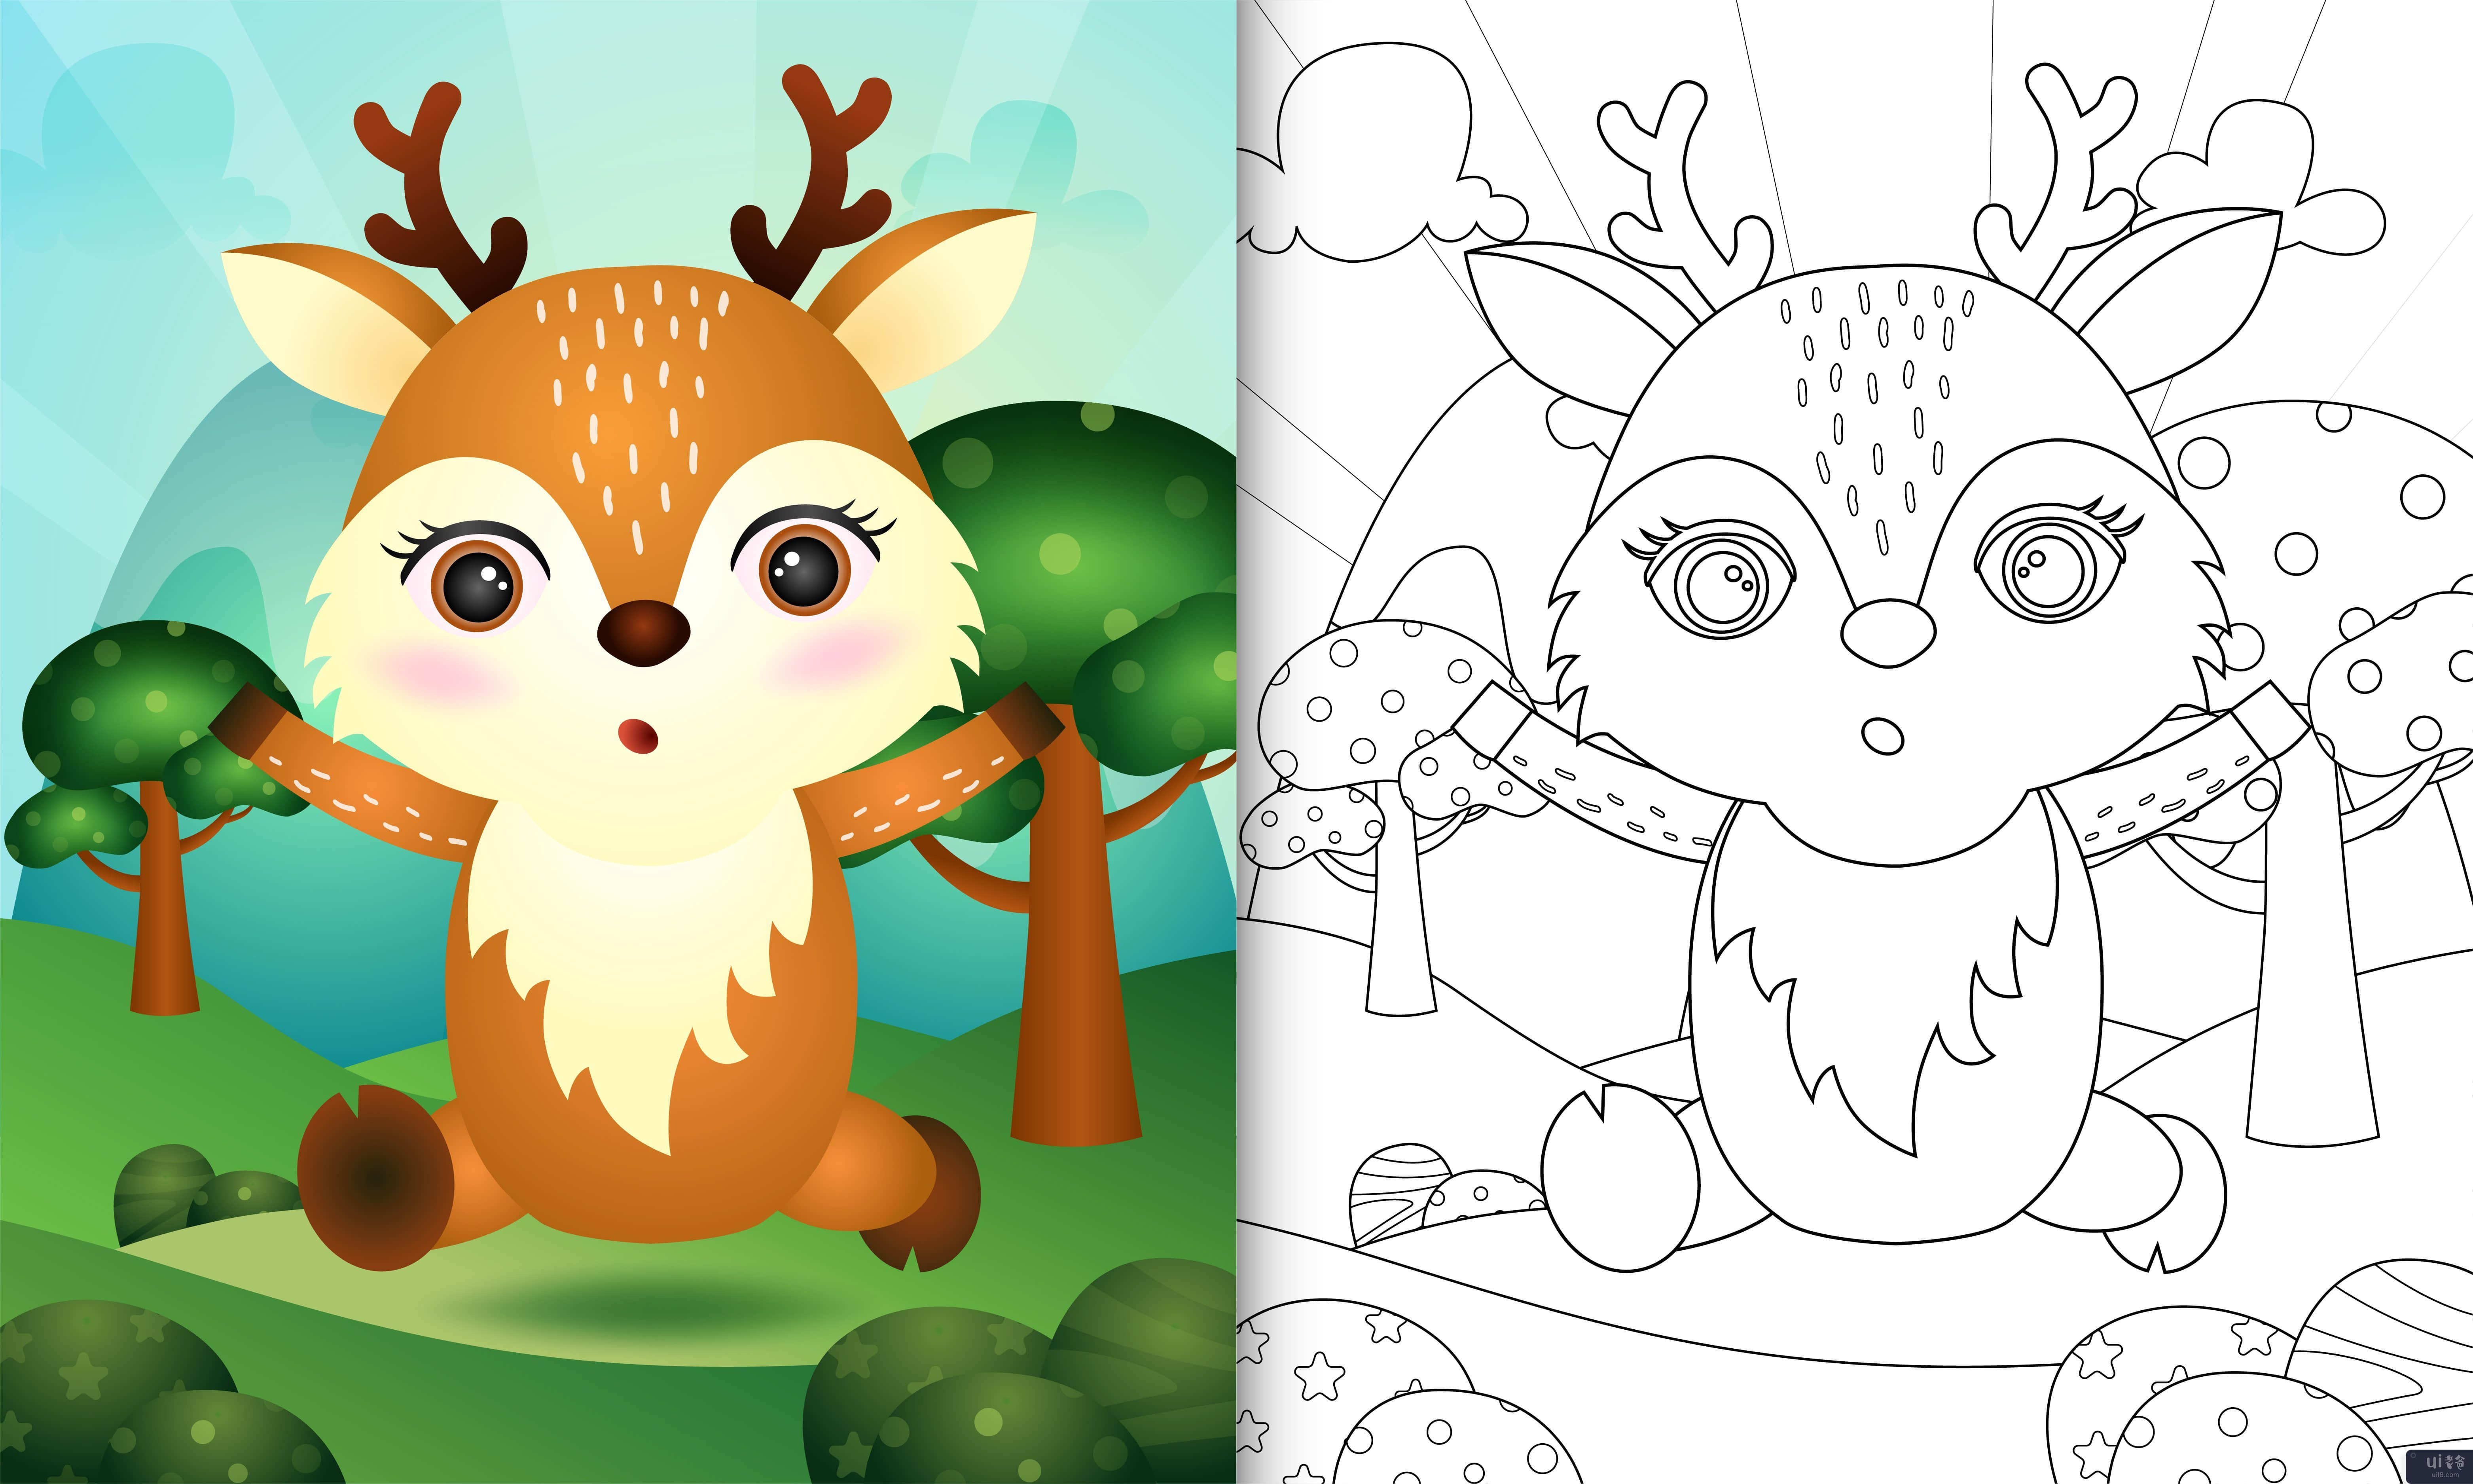 带有可爱鹿角色插图的儿童着色书(coloring book for kids with a cute deer character illustration)插图2